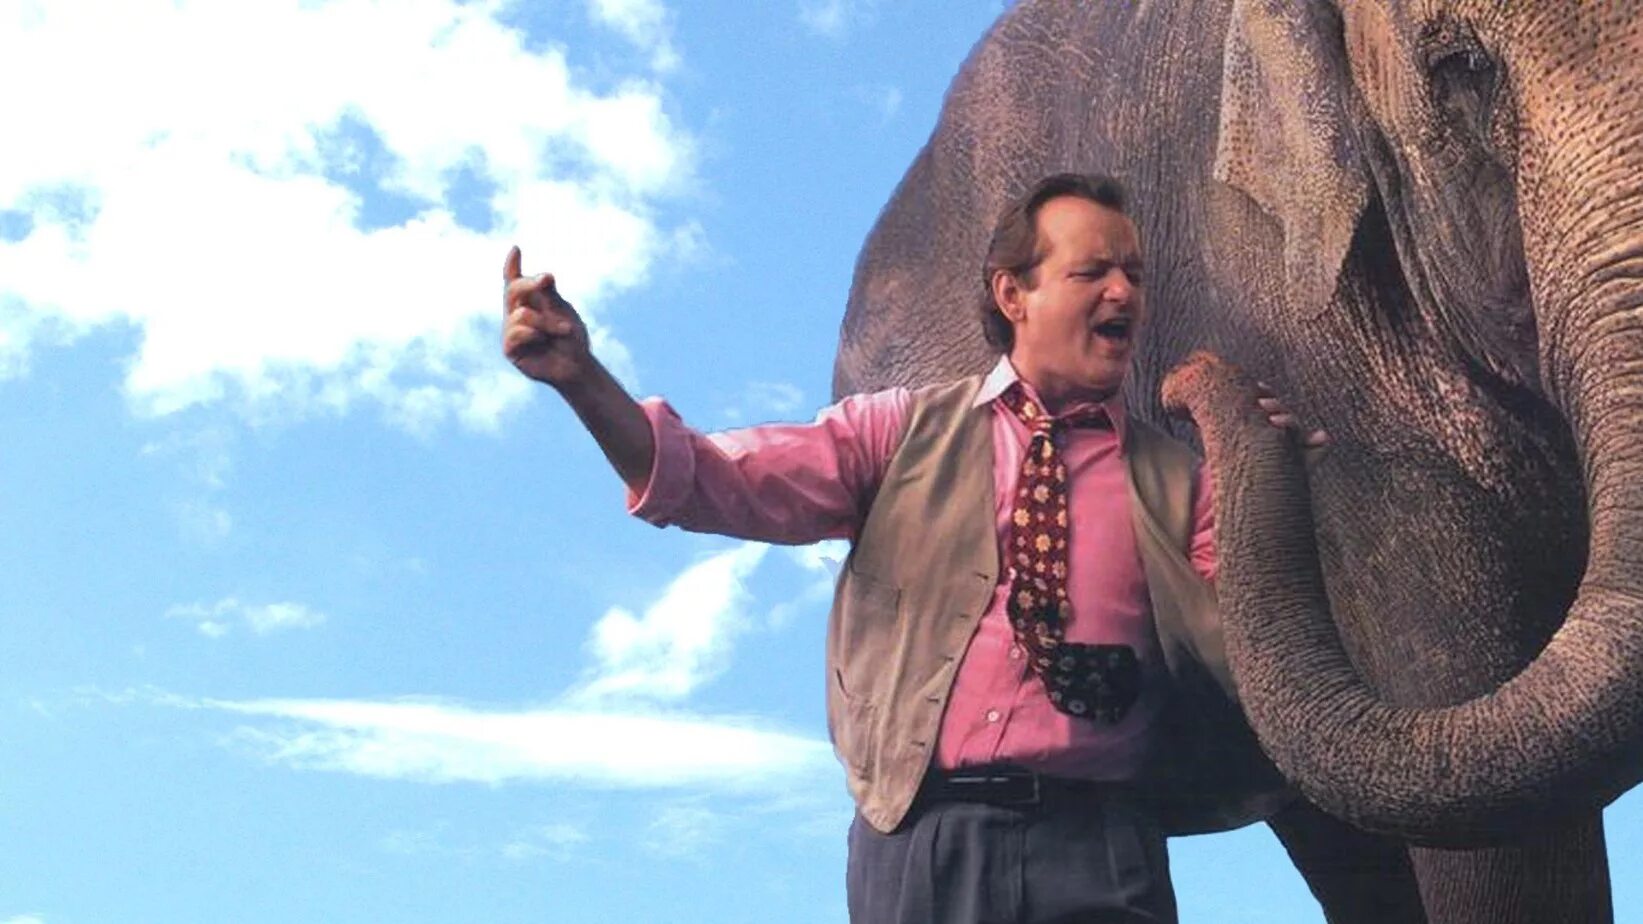 Песня больше чем жизнь. Larger than Life, 1996 Билл Мюррей. Больше чем жизнь (1996) (larger than Life). Билл Мюррей со слоном.